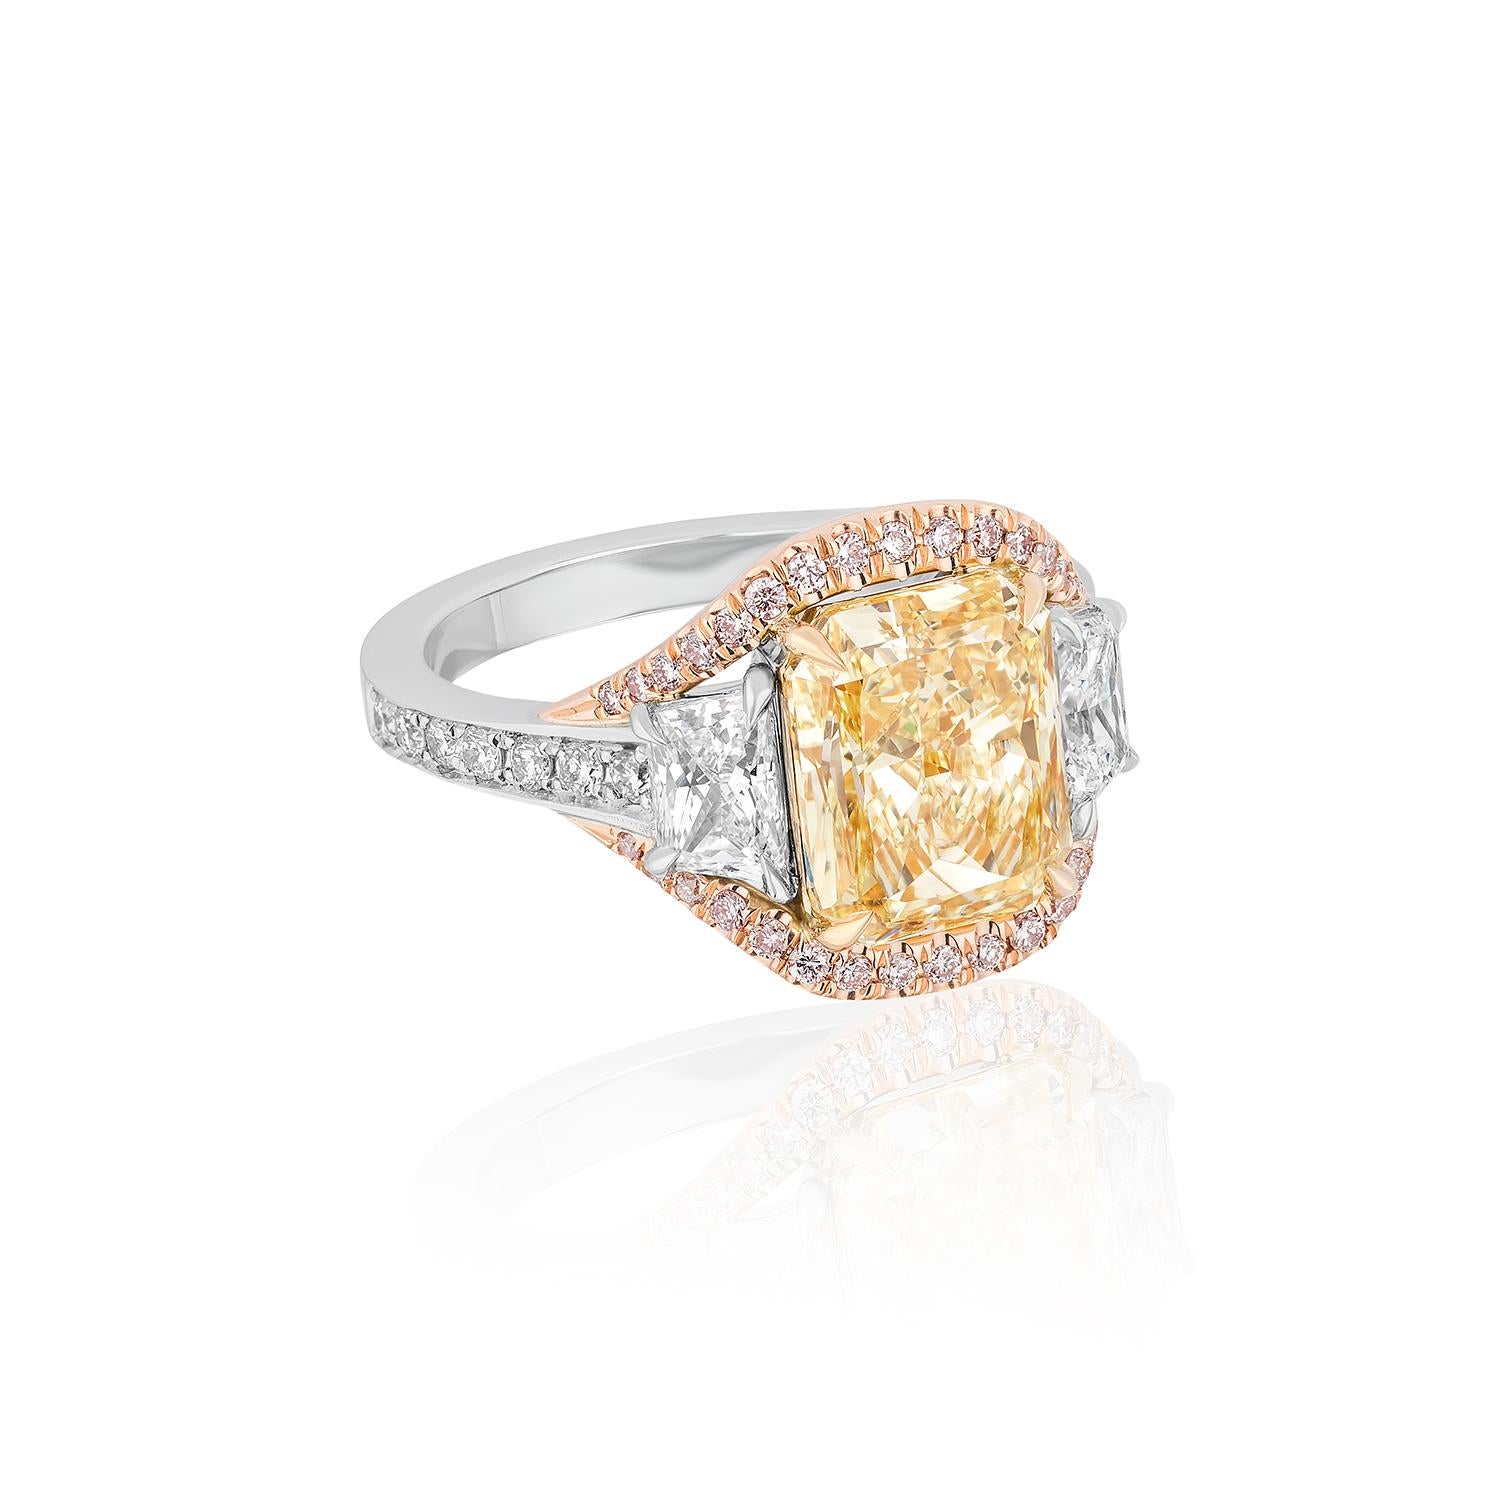 Zentriert auf einem 3,77 Karat Radiant-Schliff, flankiert von trapezförmigen Diamanten und rosa Diamanten auf der Oberseite Motiv-Design.
Weiße Diamanten auf dem Schaft.

Mittelstein mit einem Gewicht von 3,77 Karat, zertifiziert von GIA als Fancy